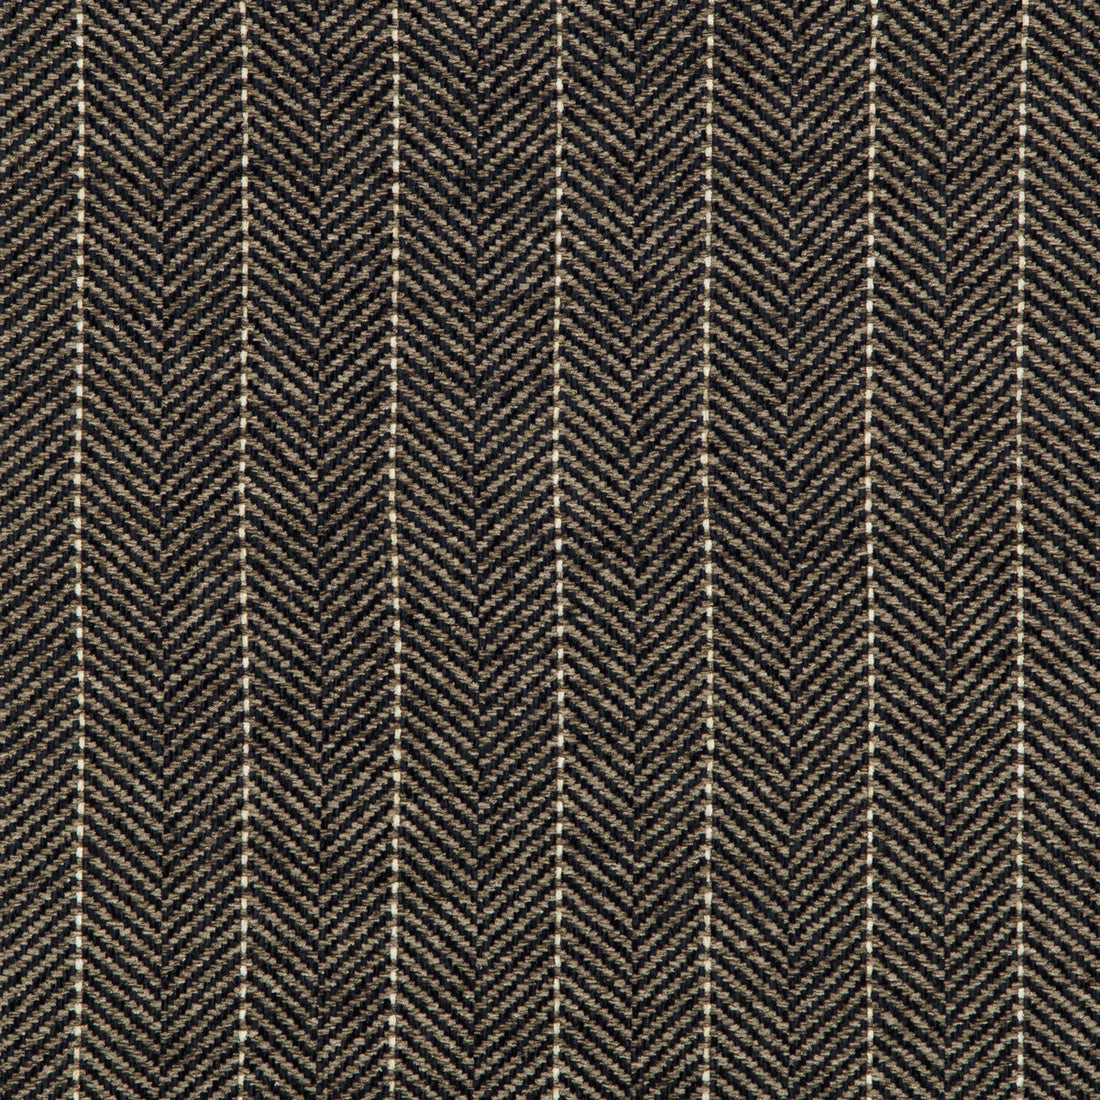 Kravet Basics fabric in 35776-81 color - pattern 35776.81.0 - by Kravet Basics